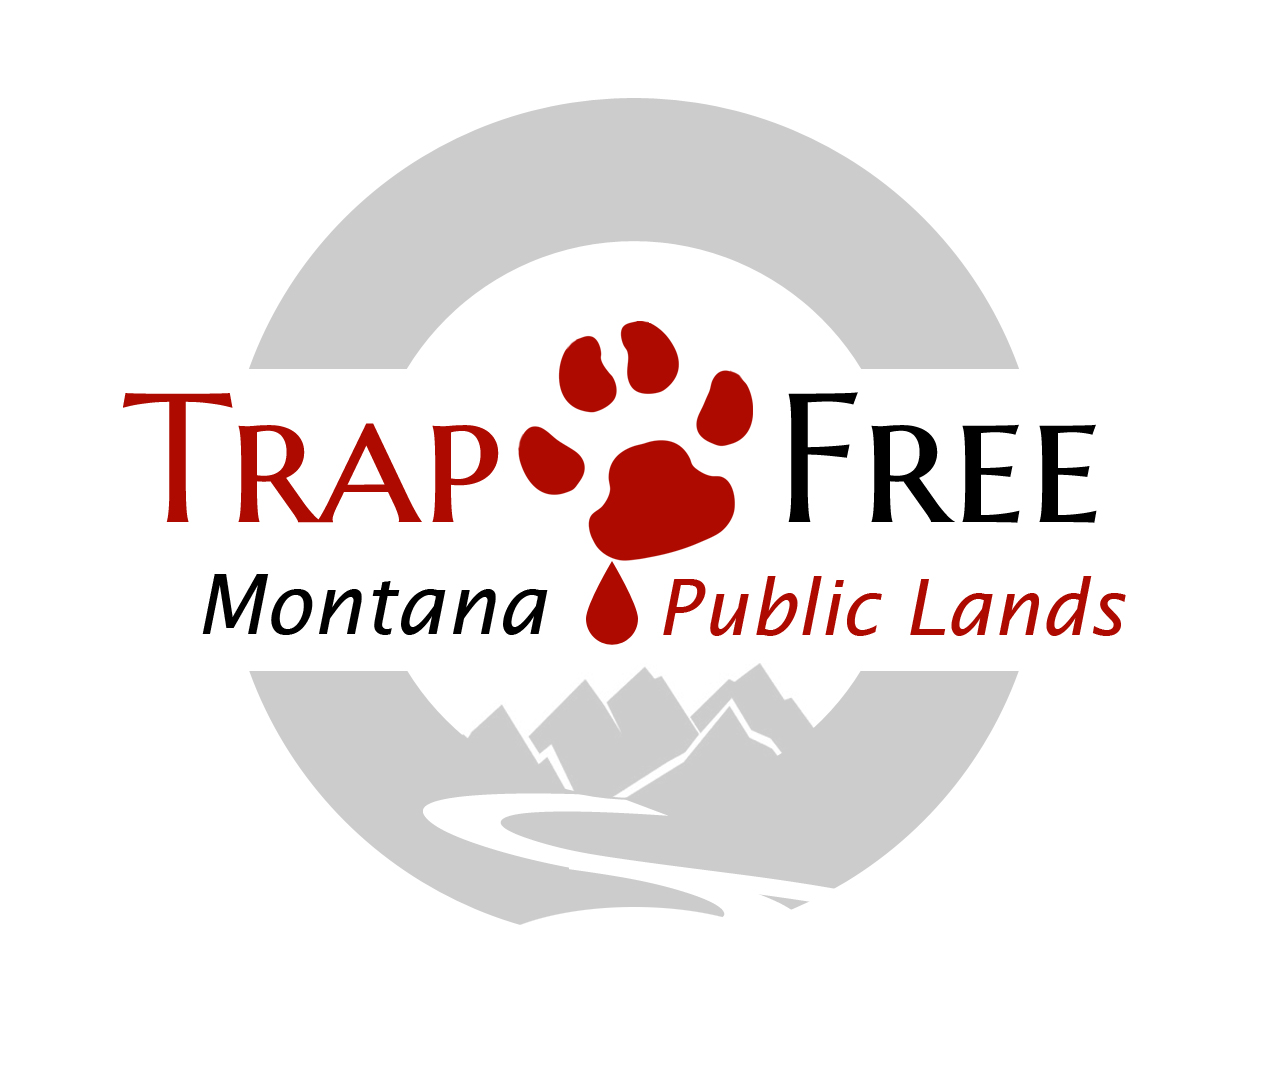 Trap Free Montana Public Lands